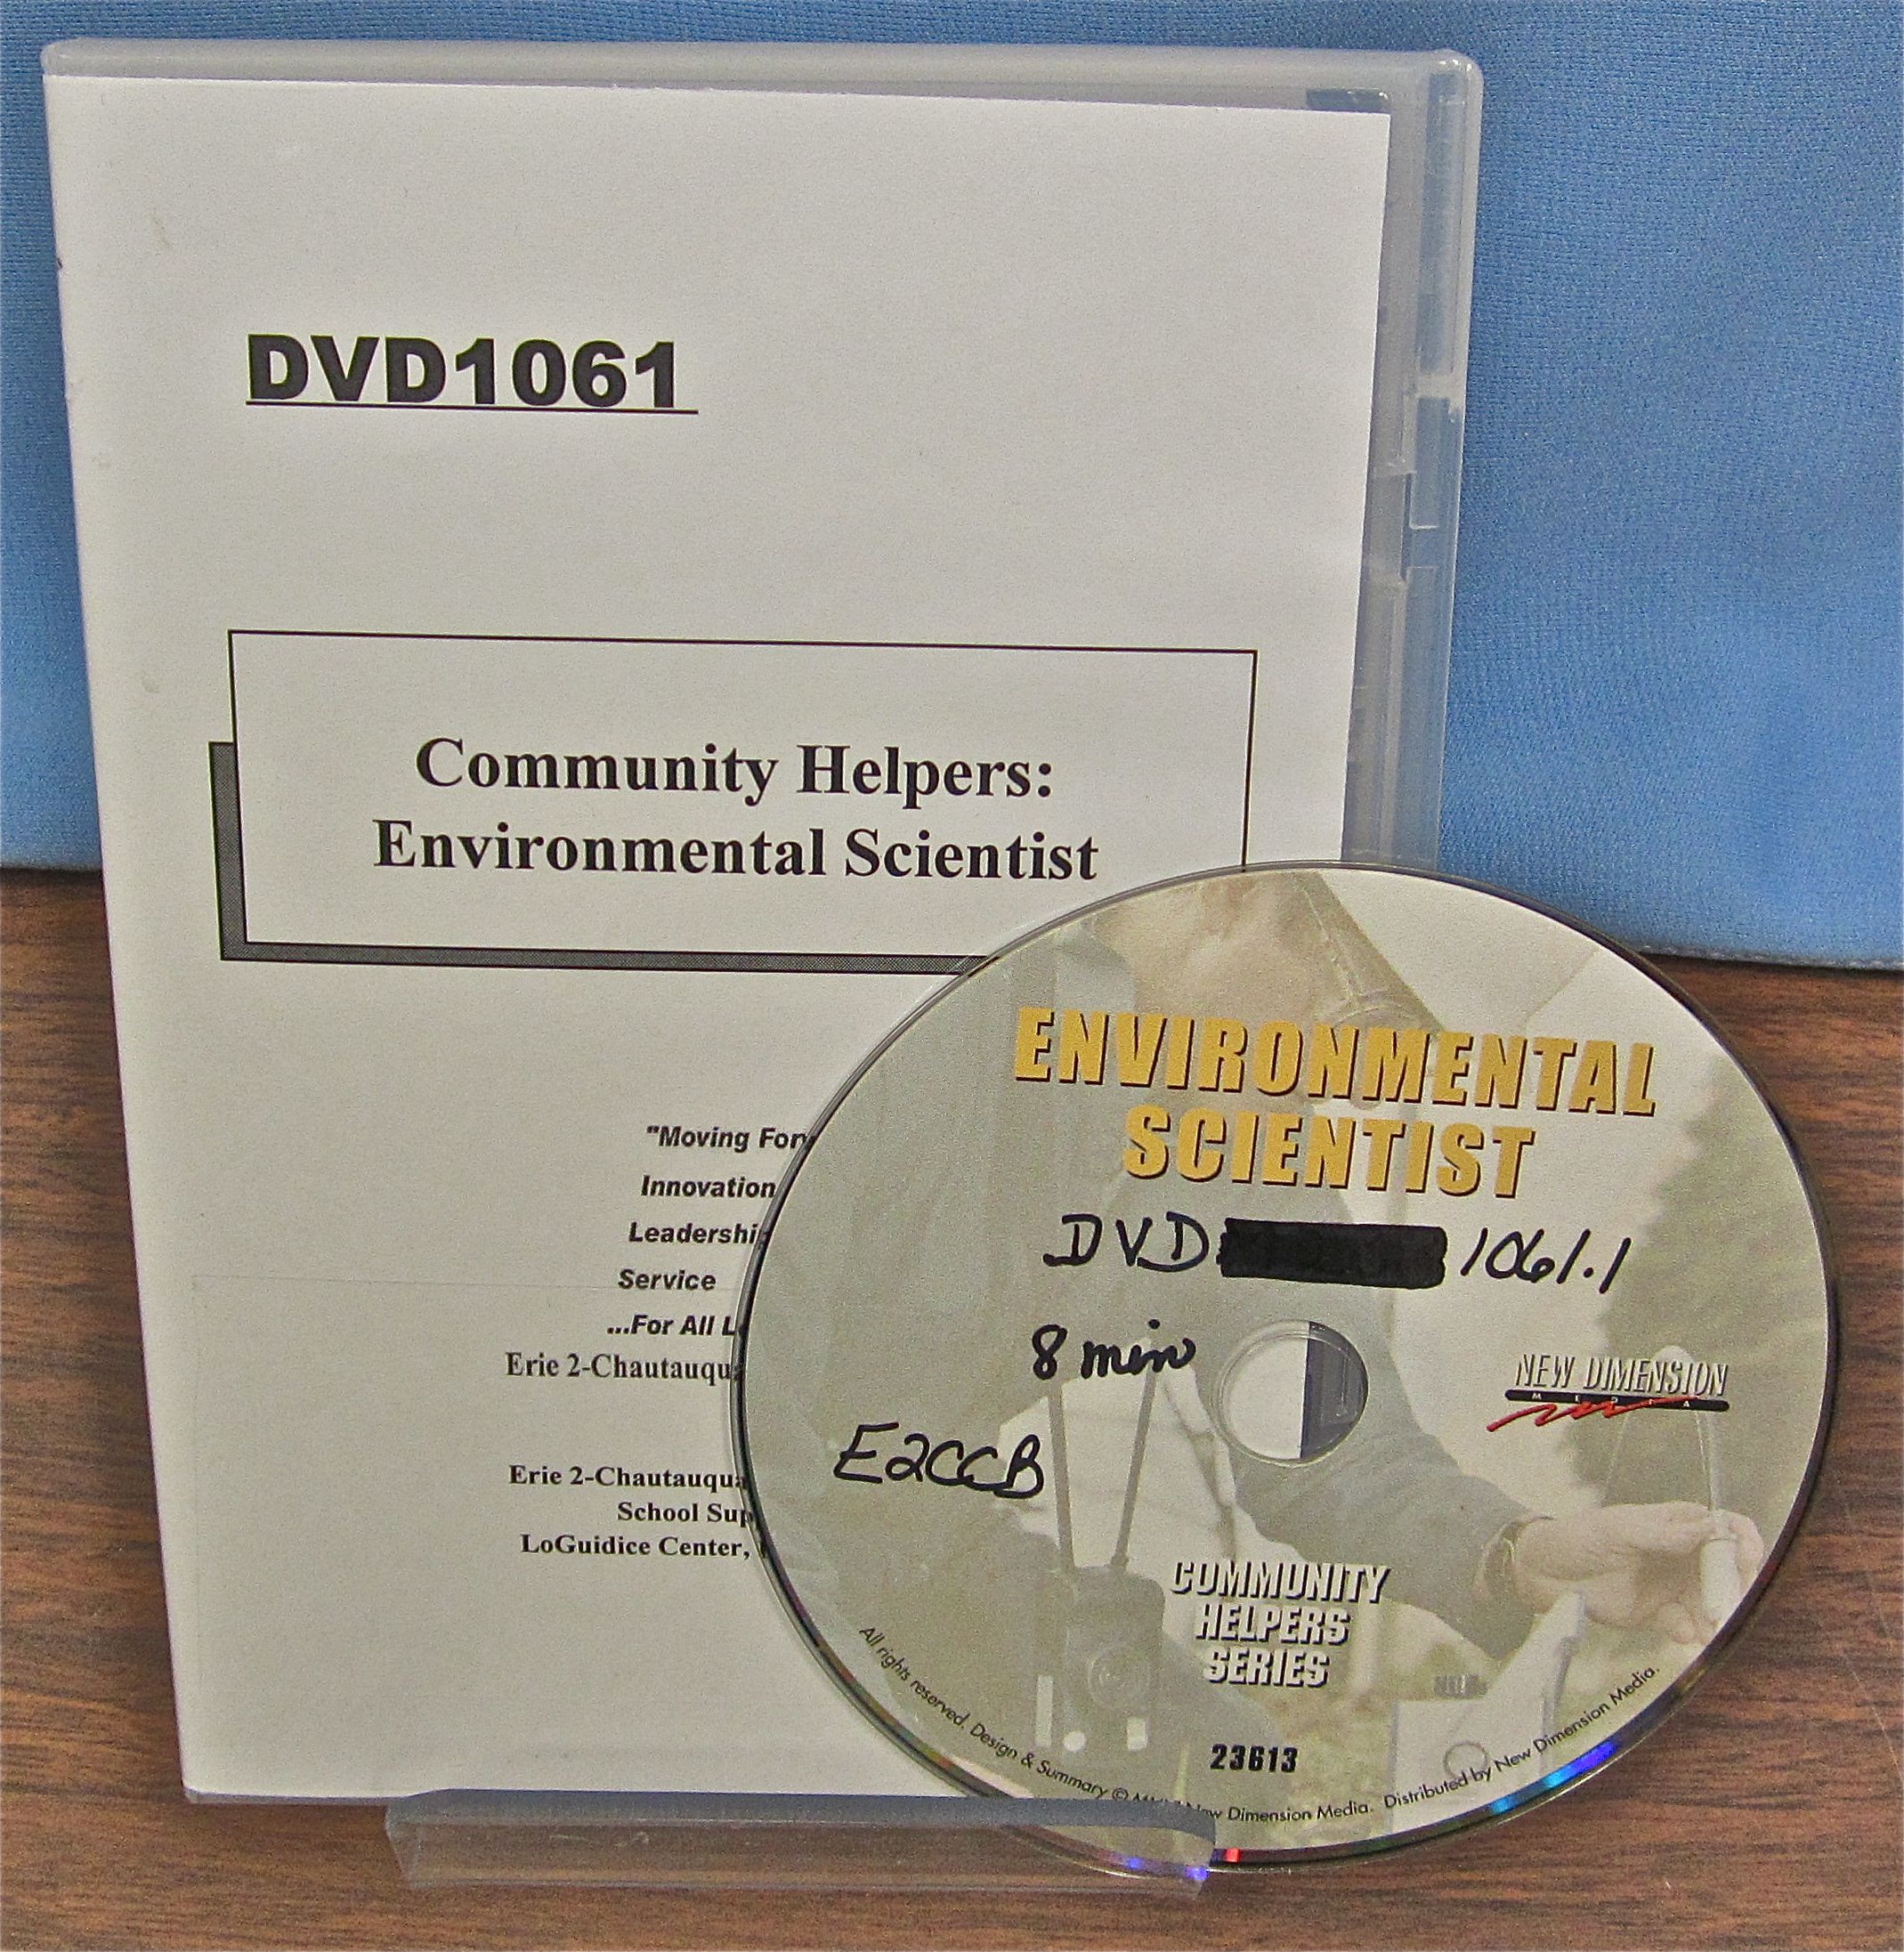 Community Helpers: Environmental Scientist